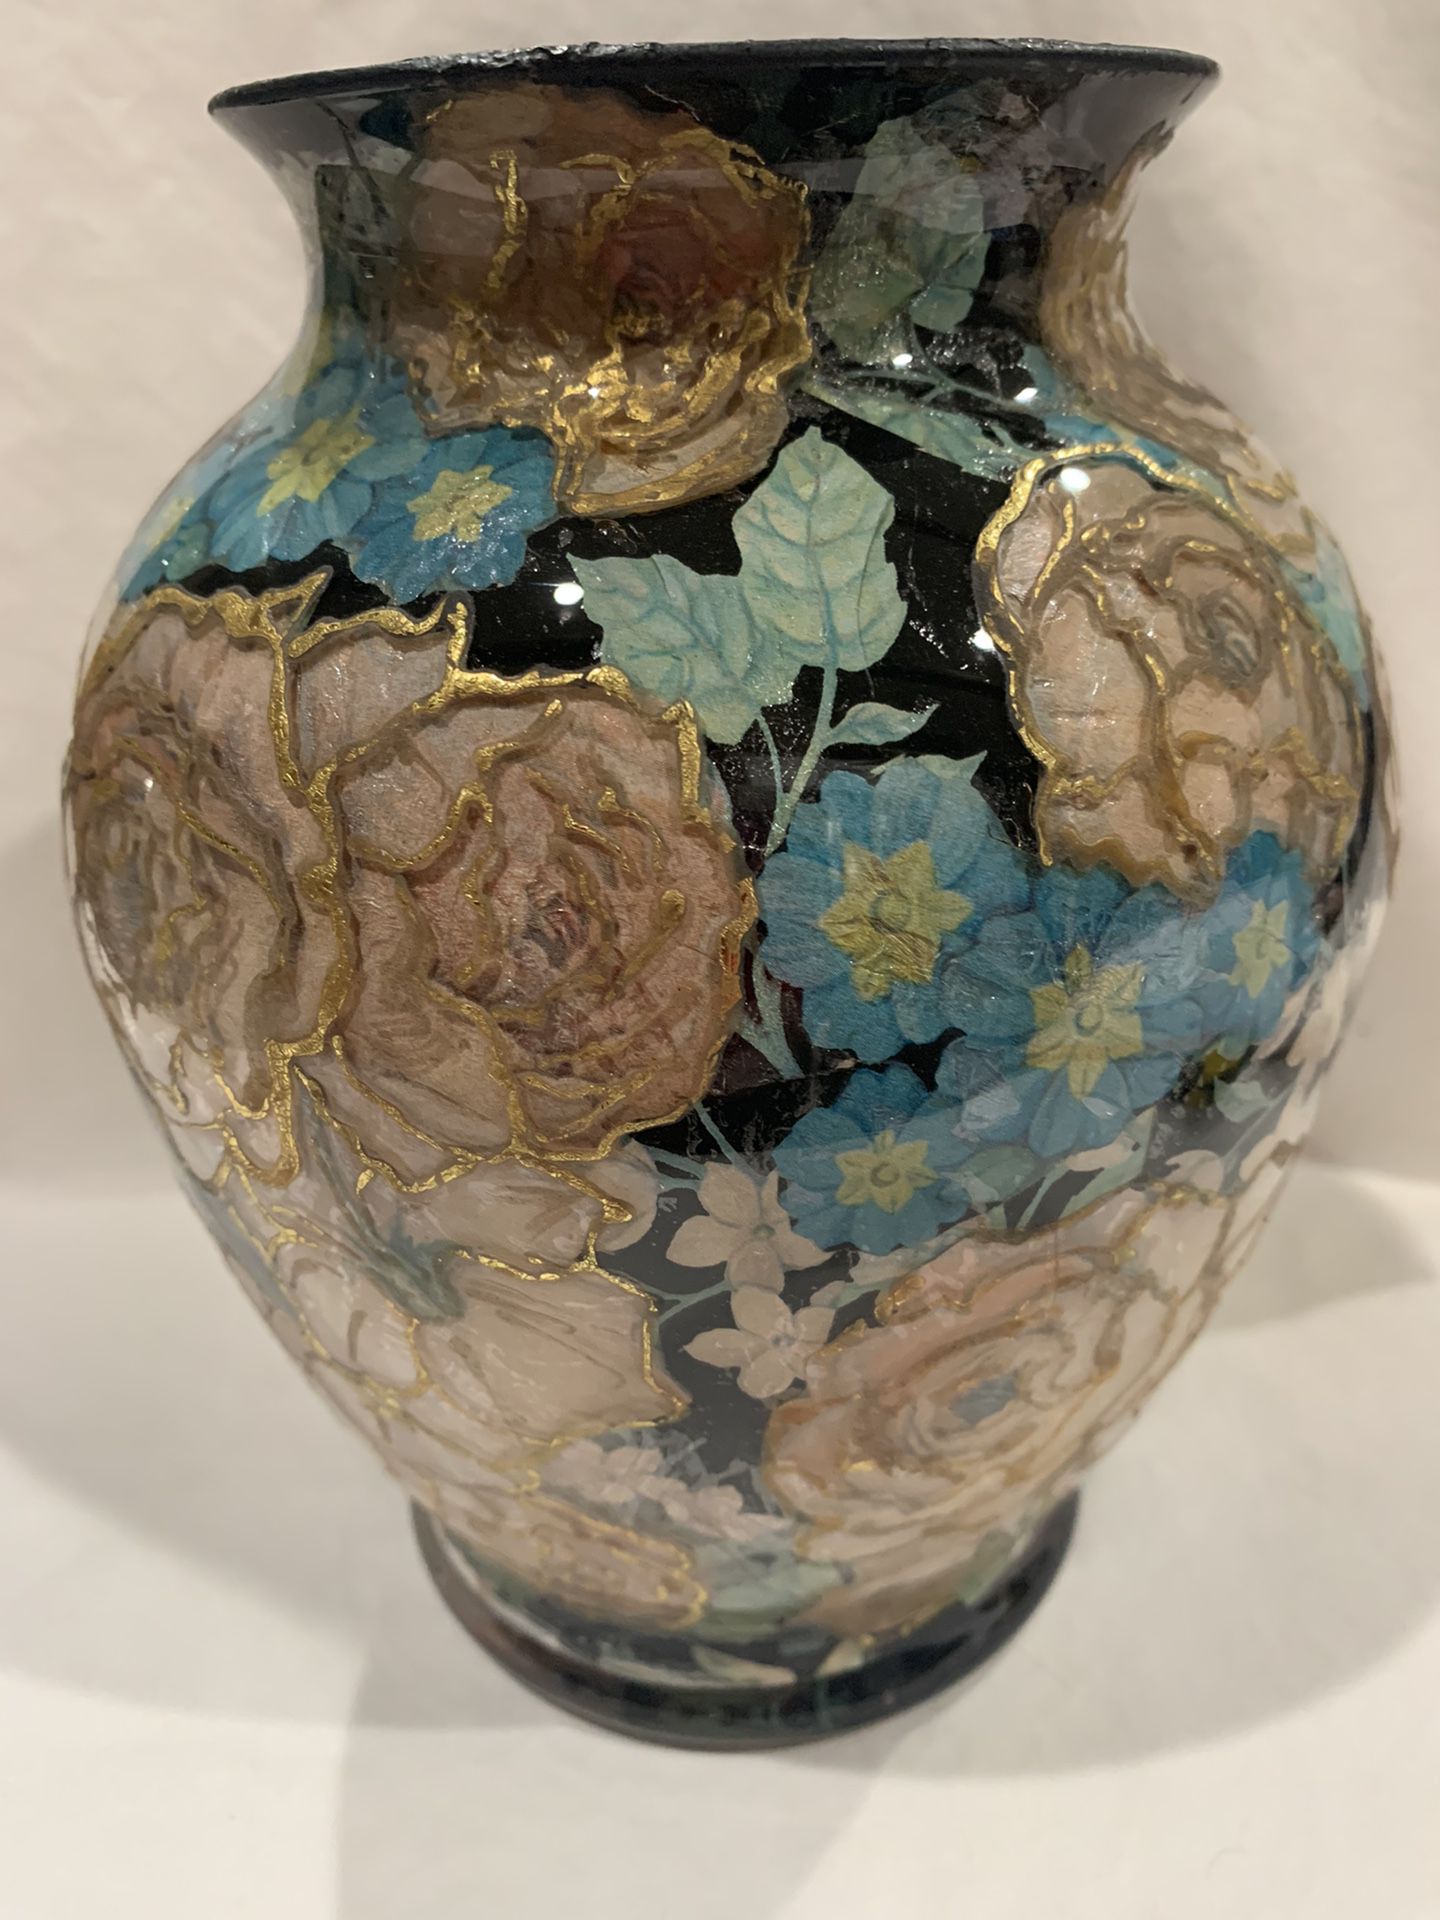 Découpage Glass Flower vase